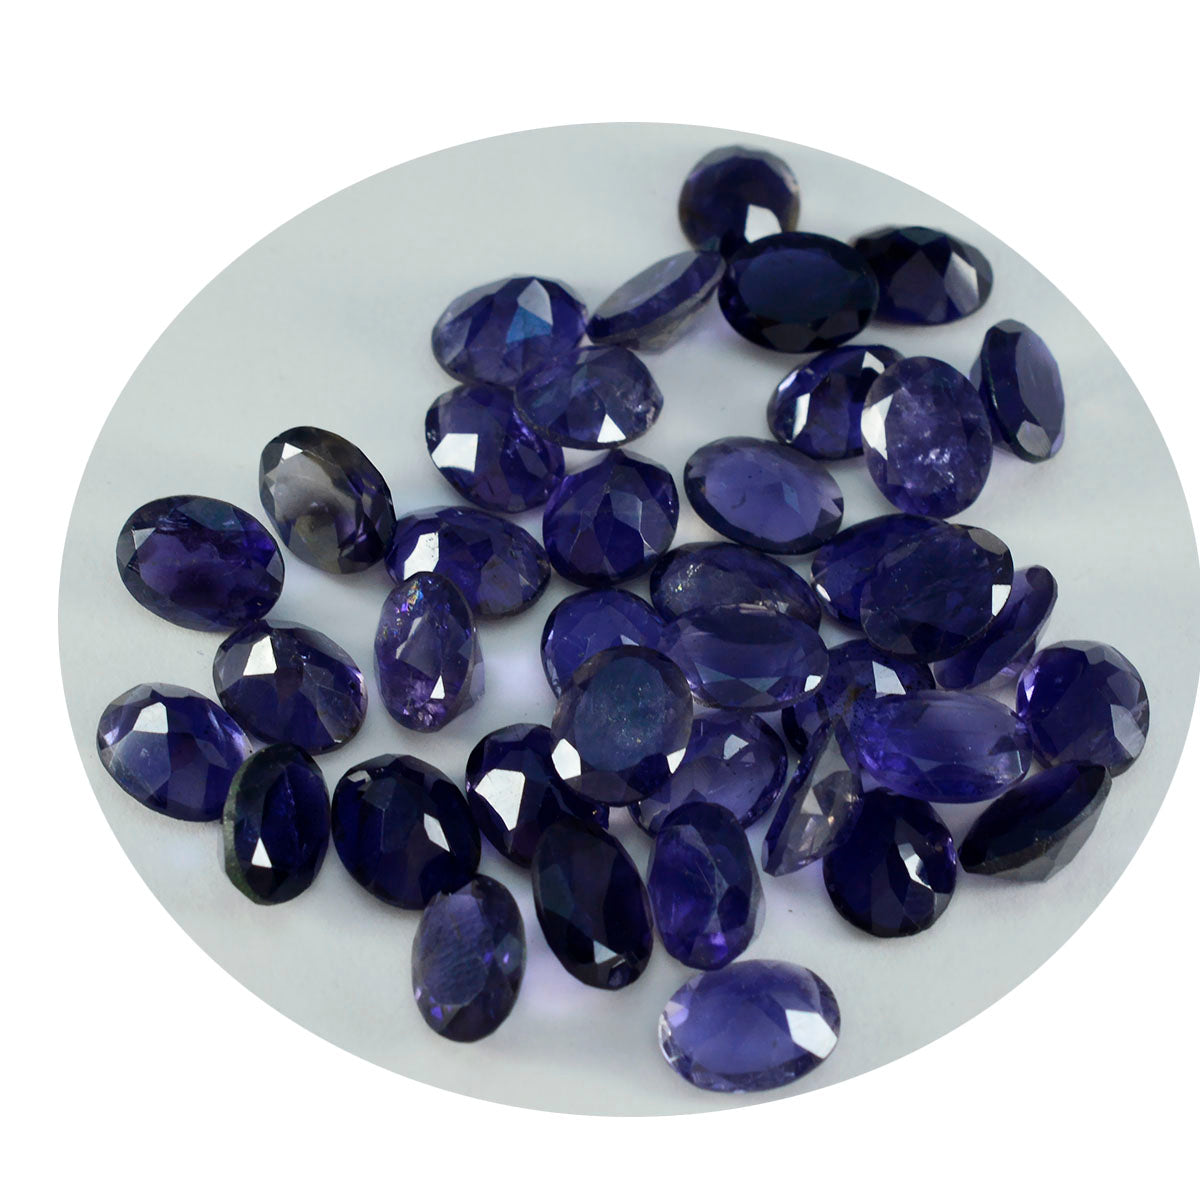 Riyogems 1PC blauwe ioliet gefacetteerde 5x7 mm ovale vorm verbazingwekkende kwaliteitsedelstenen